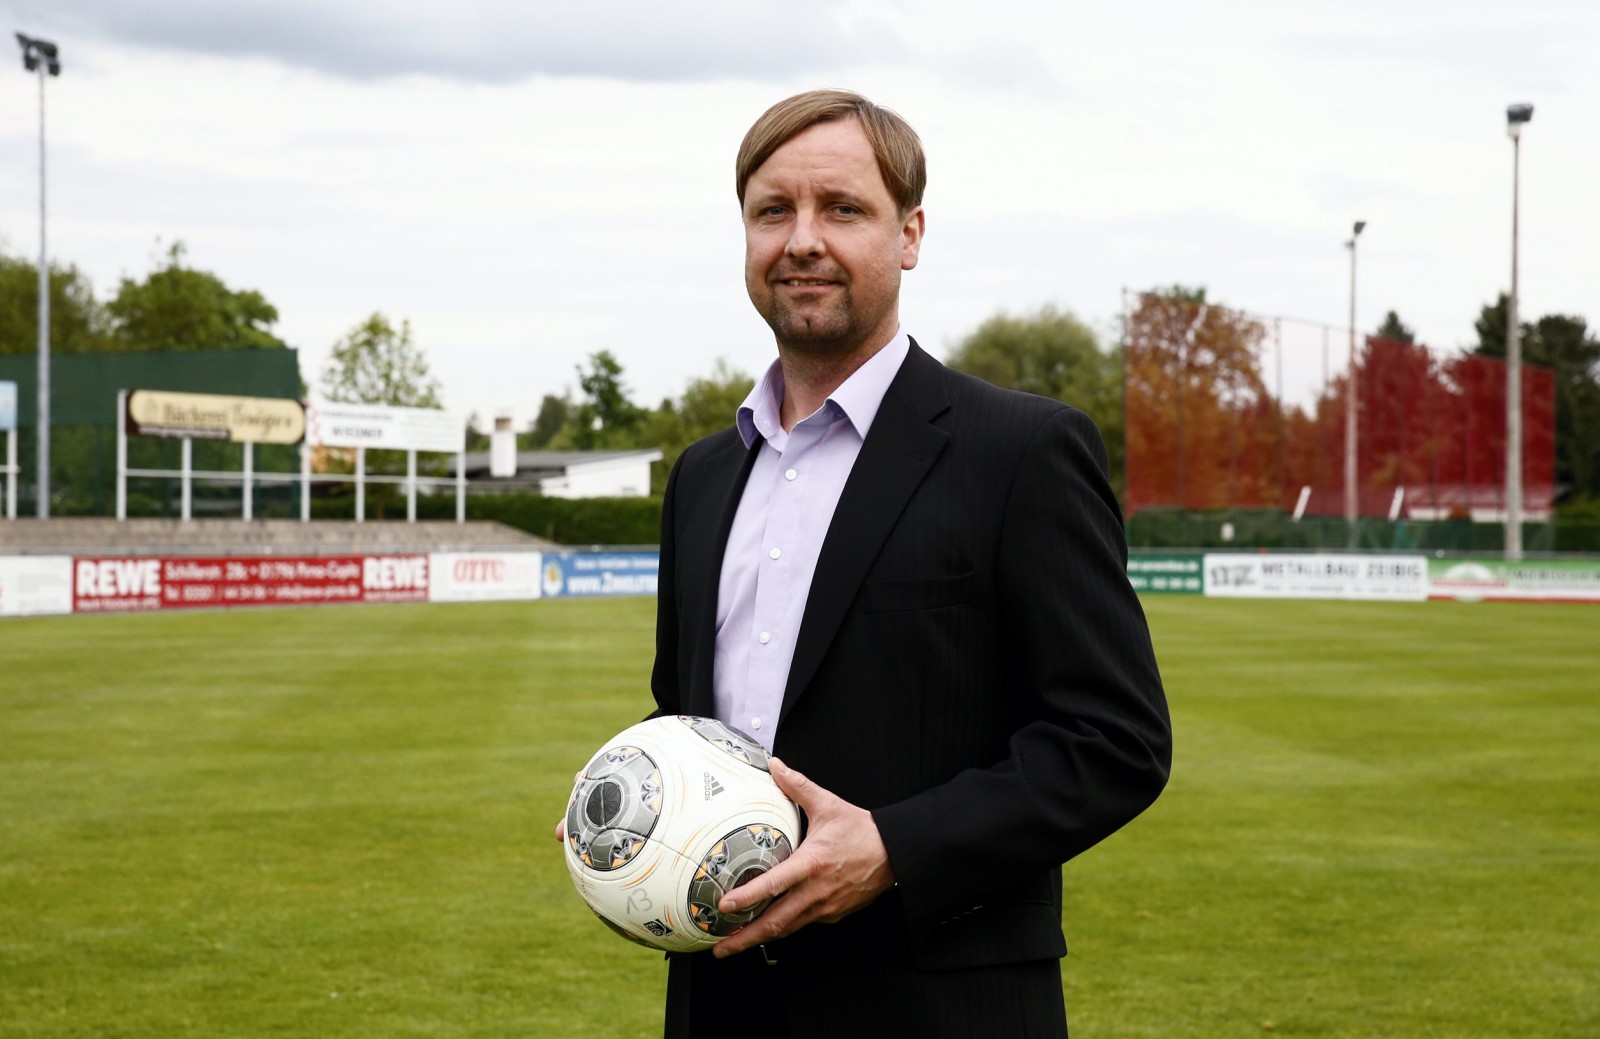 Stefan Bohne ist erster Vorsitzender des VfL Pirna-Copitz. Foto: Marko Förster